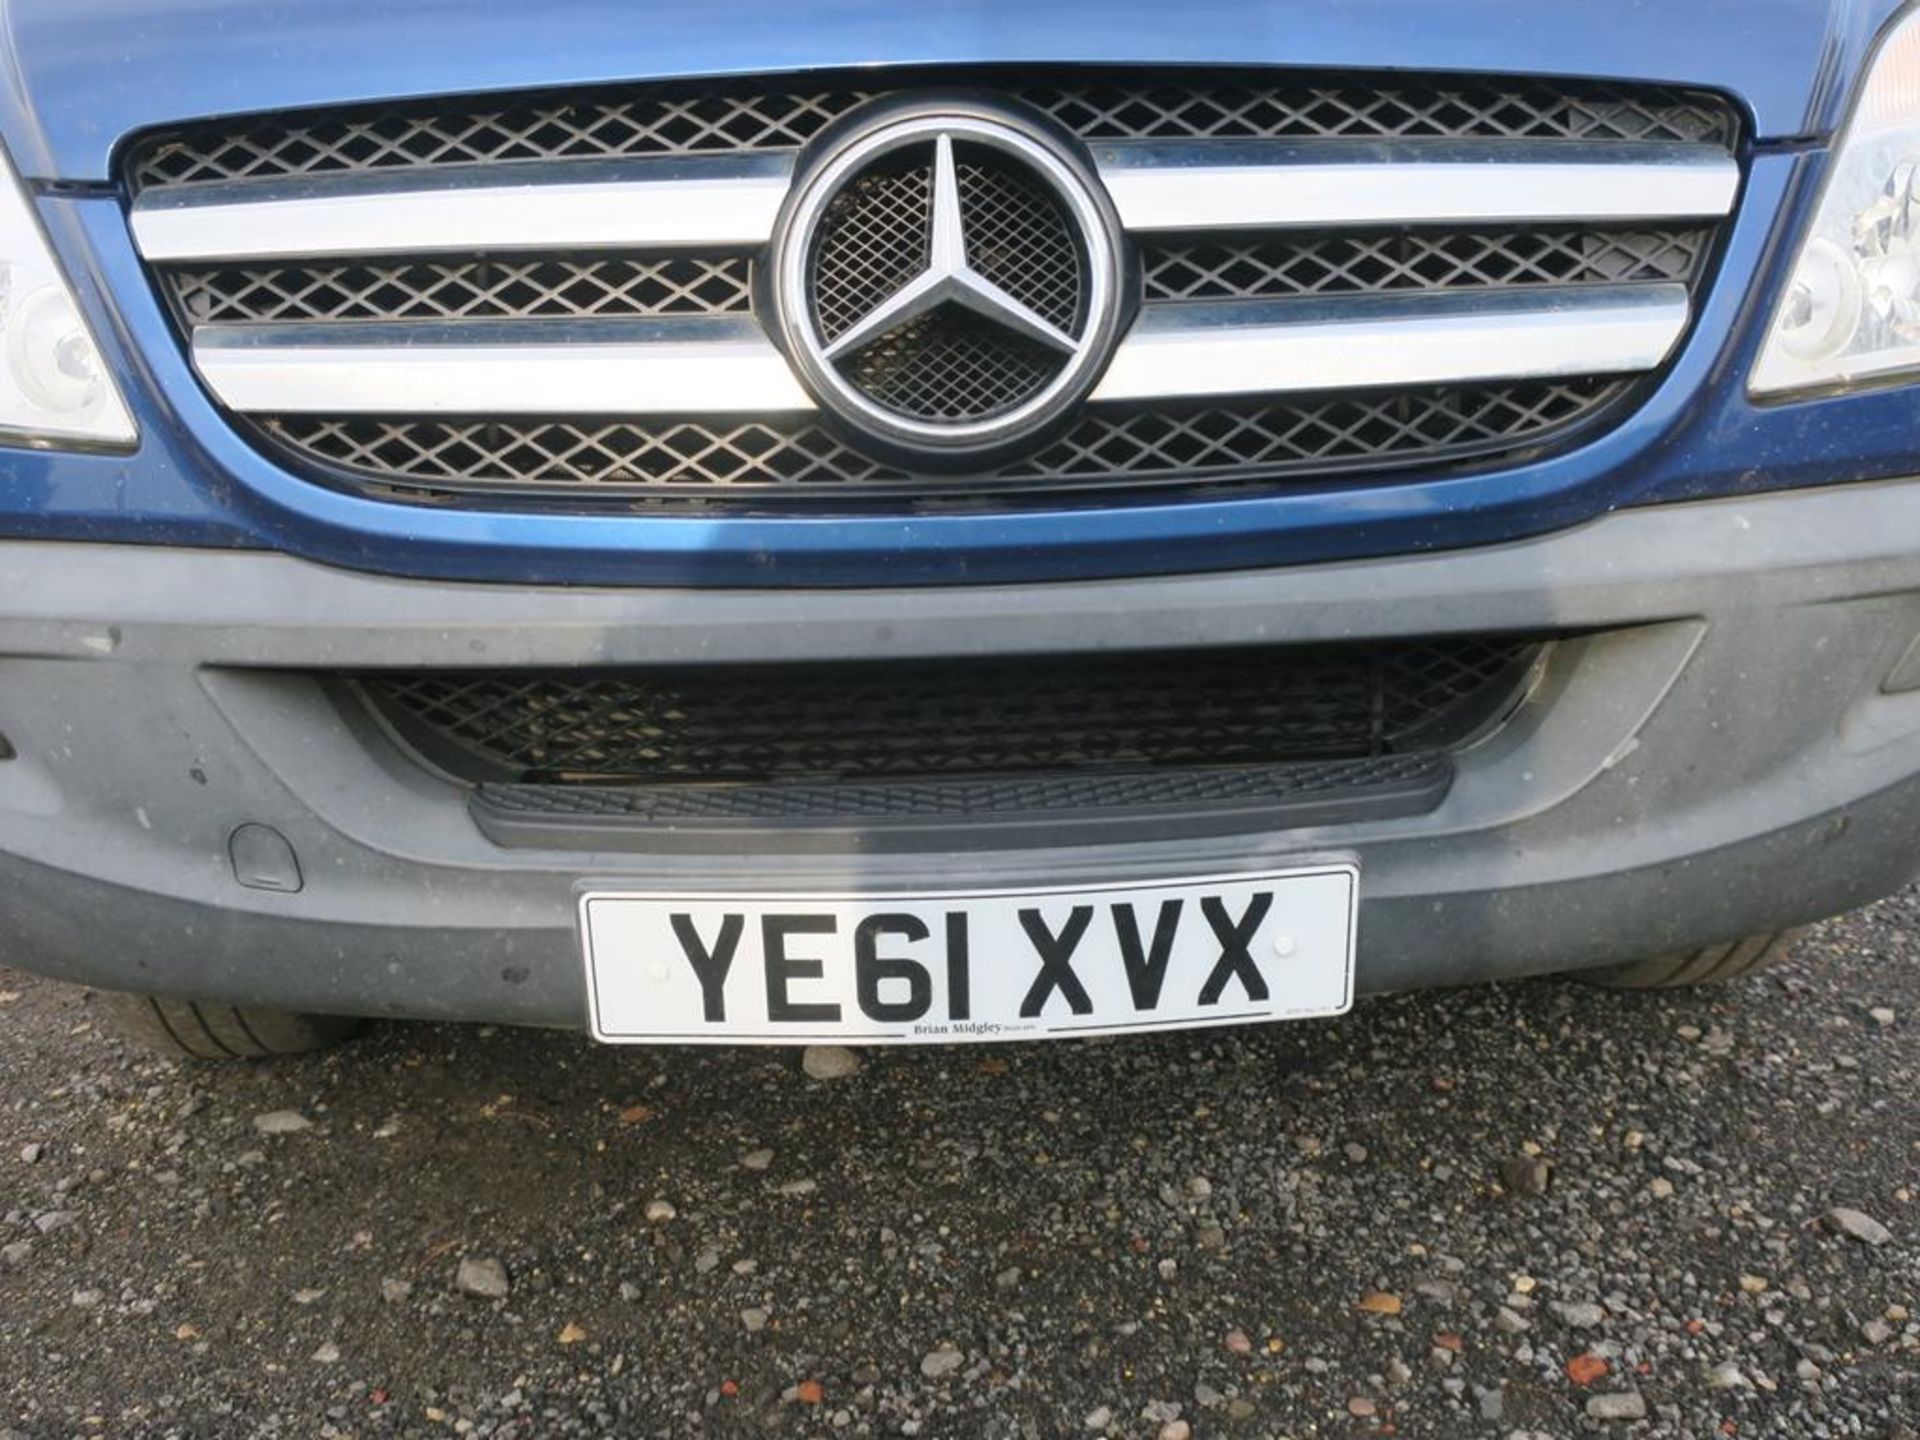 * Mercedes Sprinter 319 CD1 2987cc 3 litre V6 diesel; Registration YE61 XVX; MOT 14th November 2019; - Image 2 of 27